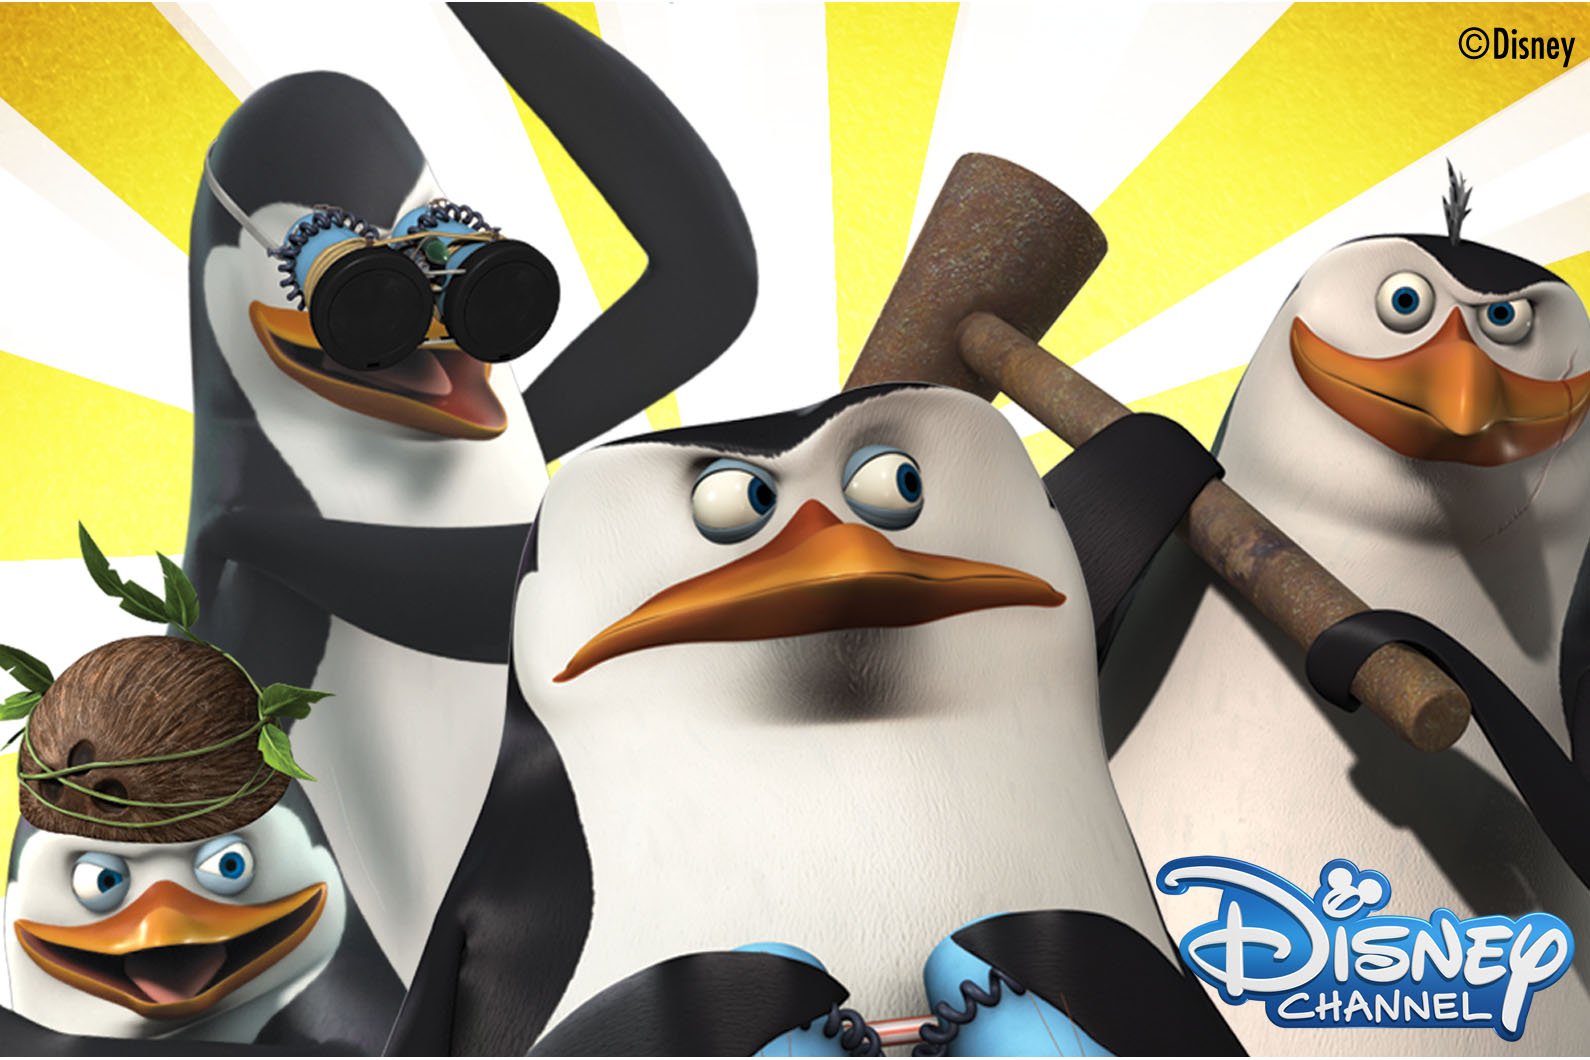 ディズニー チャンネル公式 15日 日 10時 ザ ペンギンズfromマダガスカル 話連続放送 キュートなペンギンたちが秘密組織のメンバーとして任務に大奮闘 続いて時 マダガスカル3 を放送 笑いのとまらないハッピーなトリ年を T Co